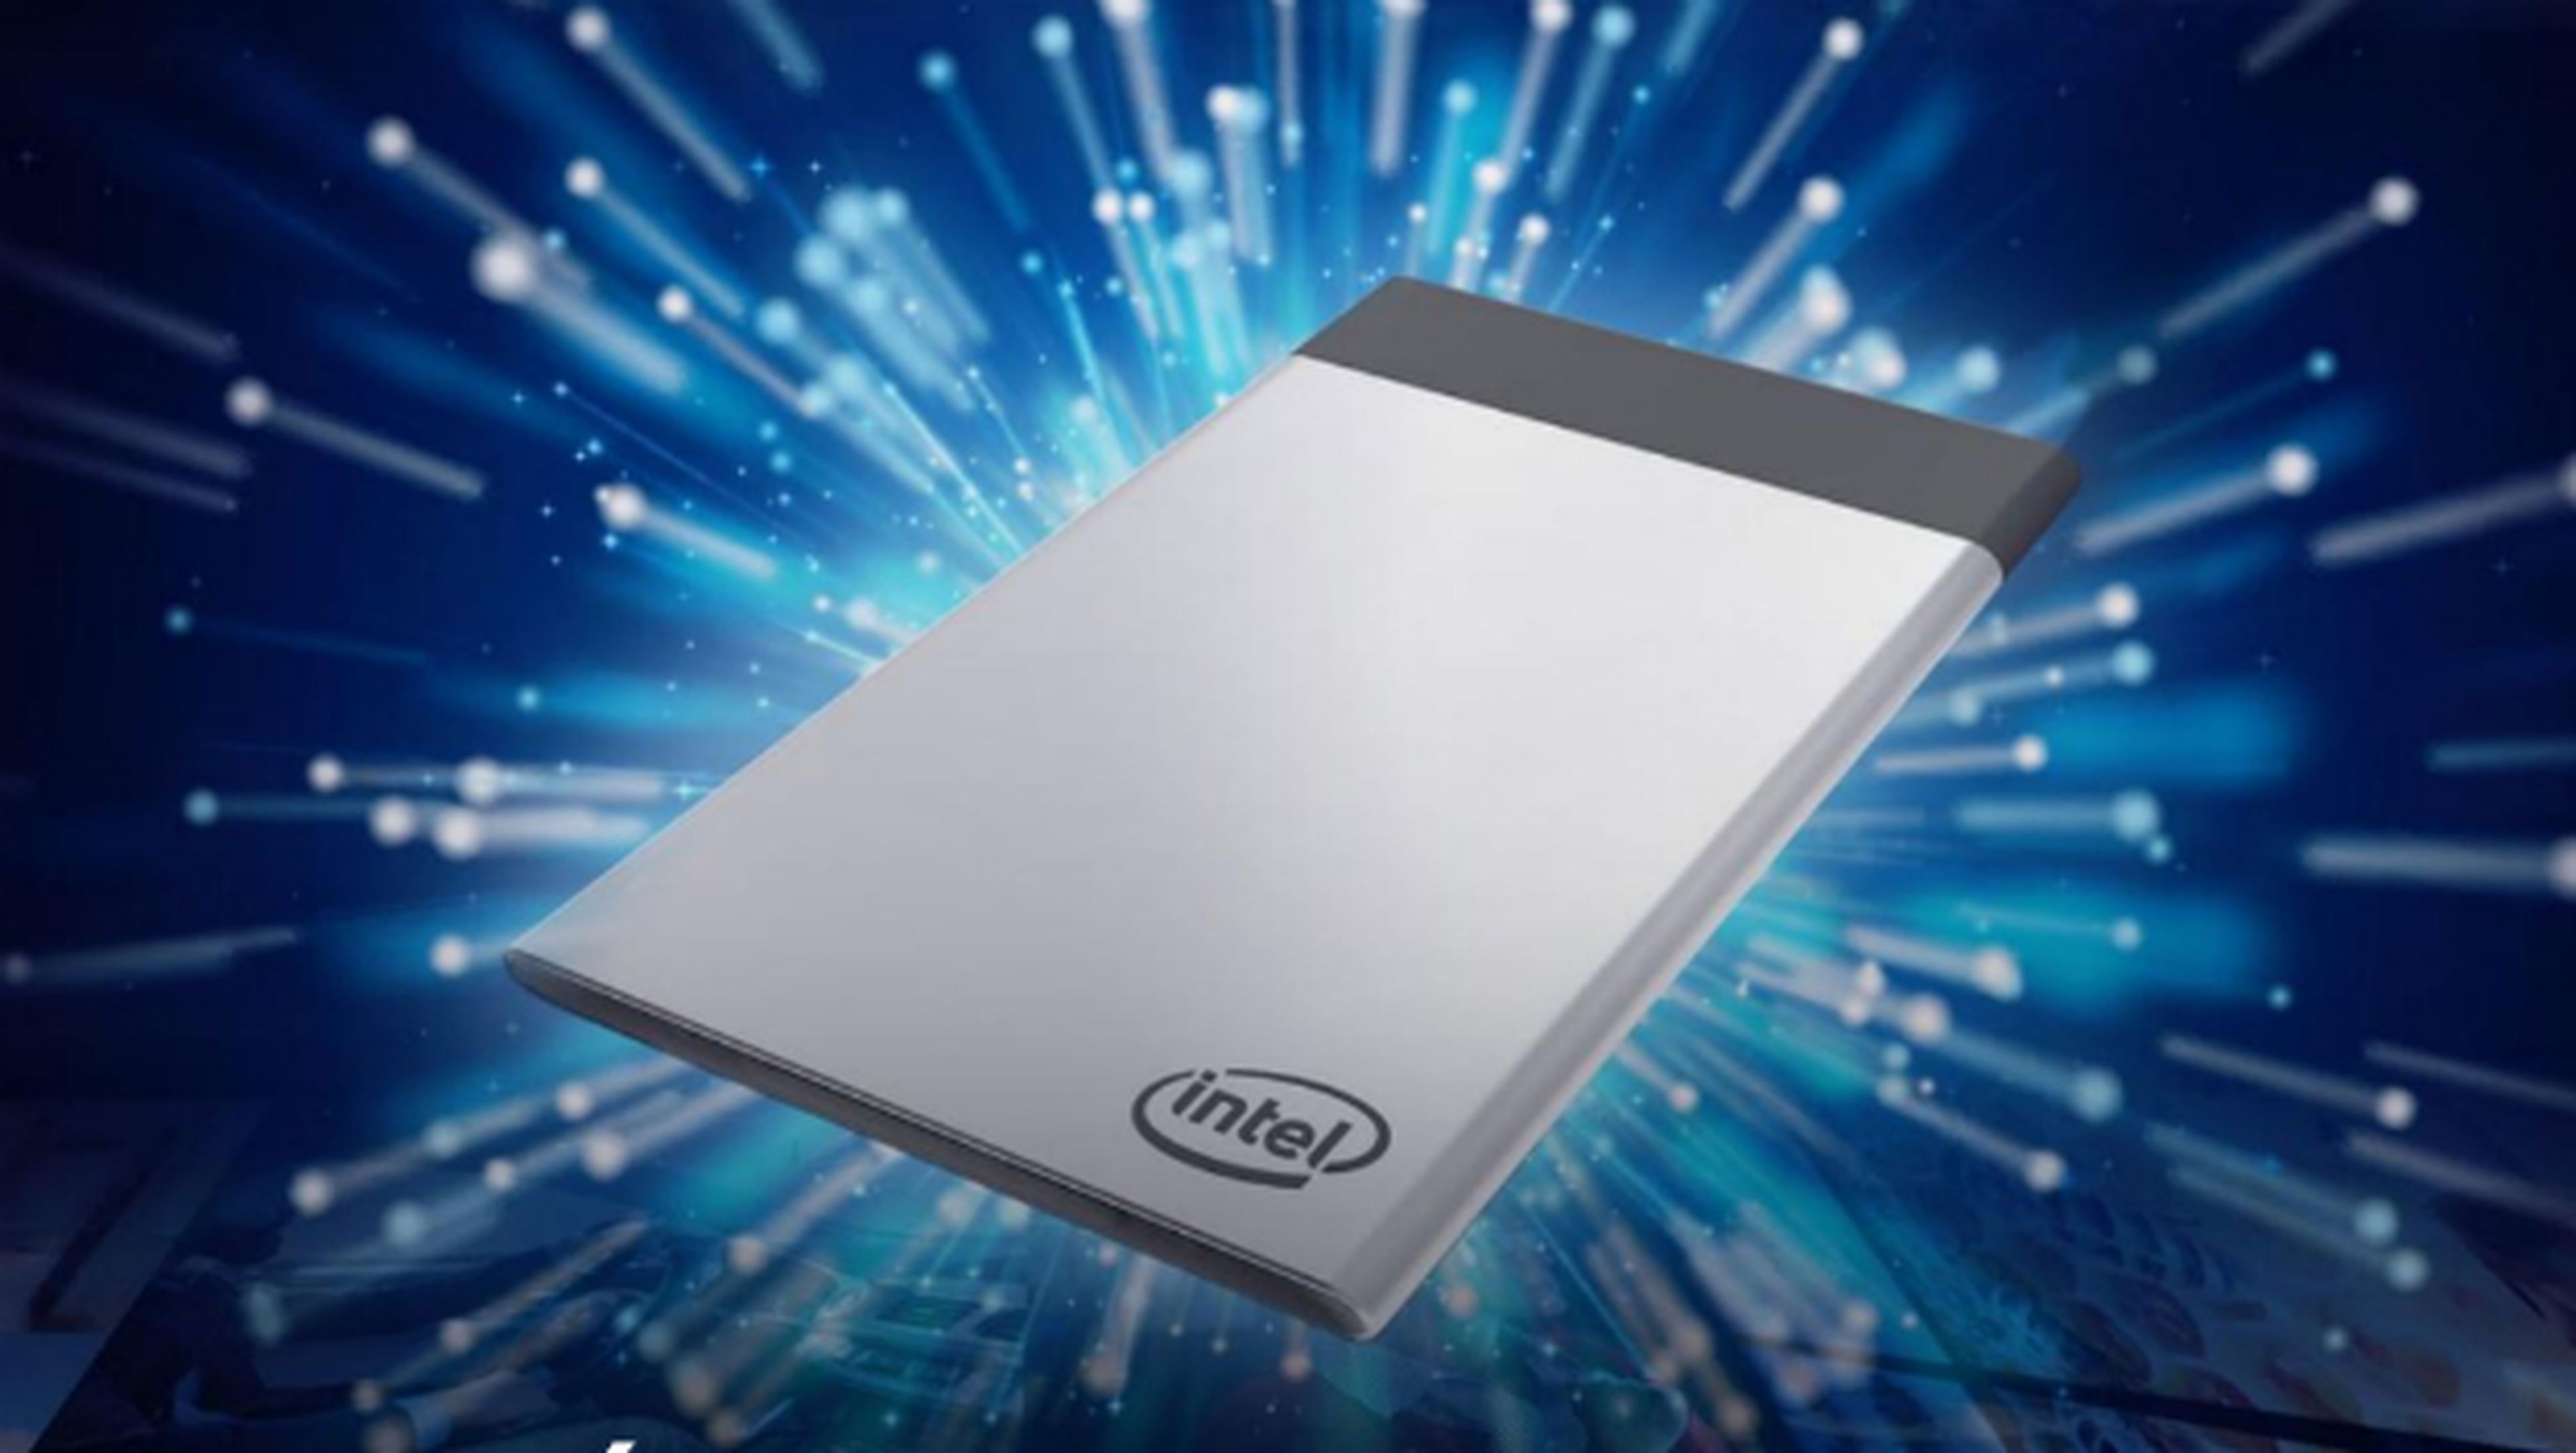 Intel Compute Card, un potente Mini PC del tamaño de una tarjeta: características y fecha de lanzamiento.